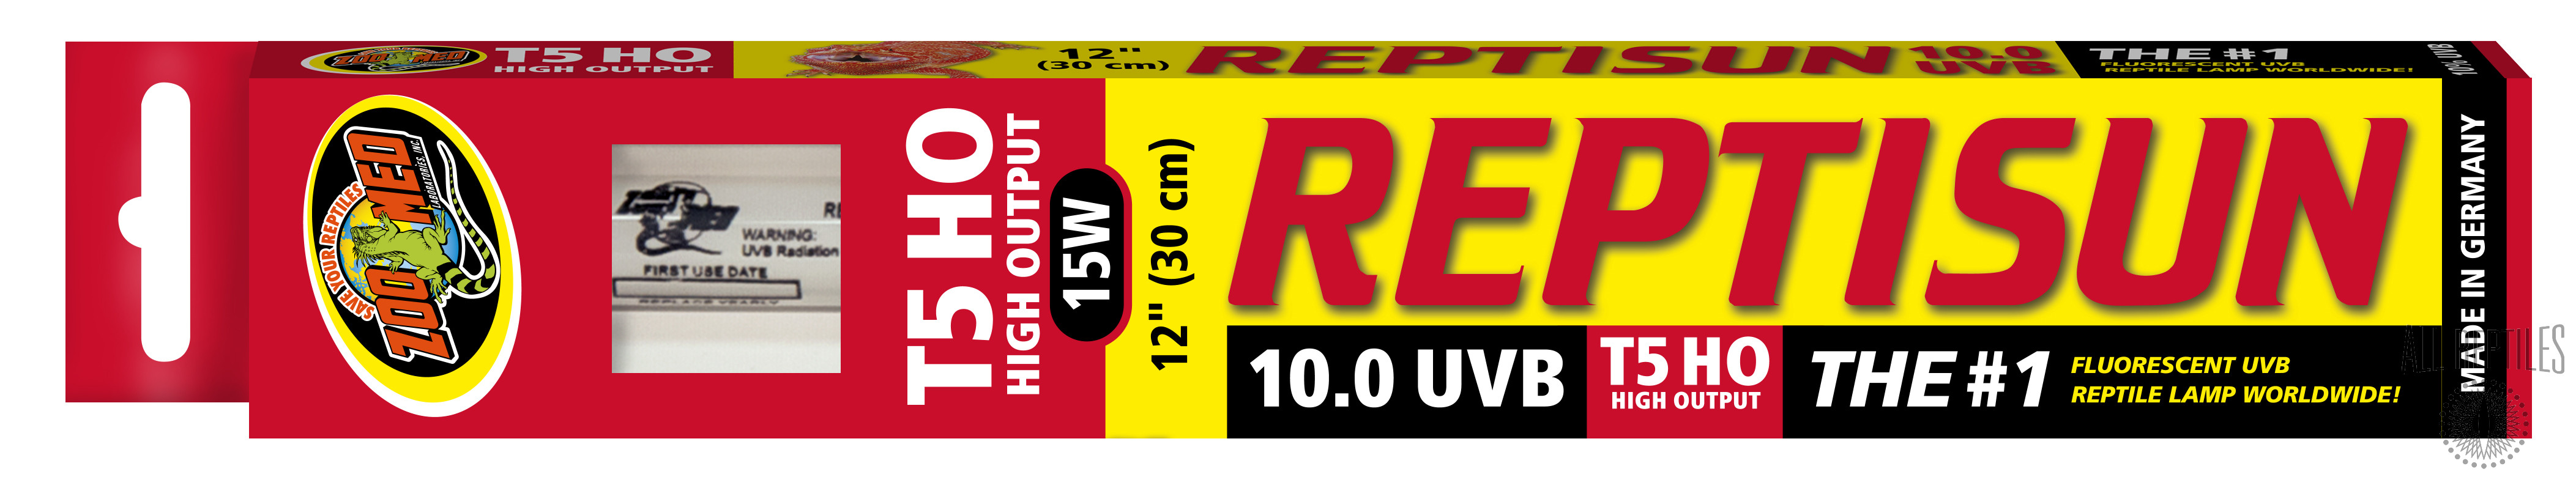 ZM Reptisun T5 UVB 10.0 Linear